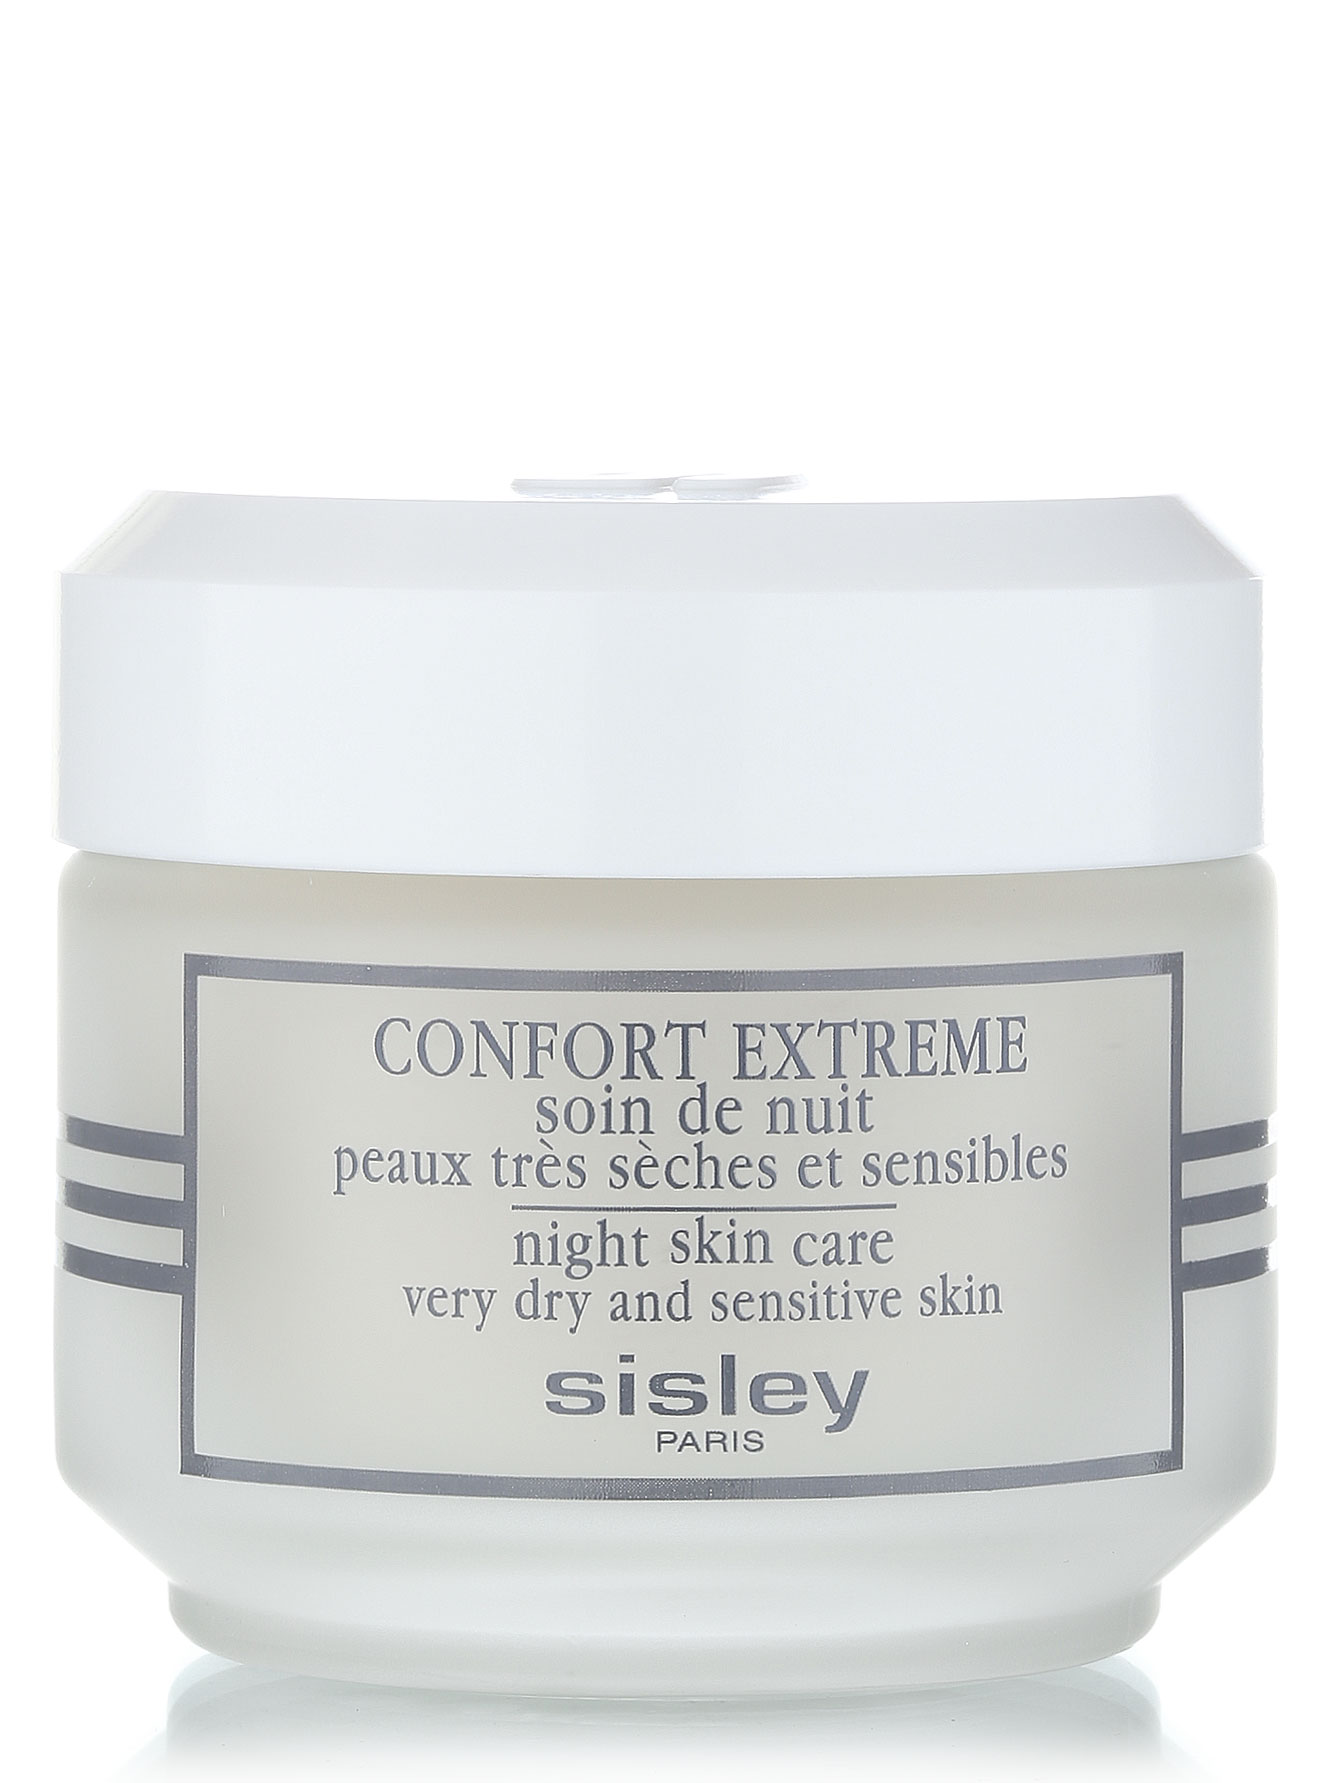  Крем ночной - Confort Extreme Face Carem, 50ml - Общий вид